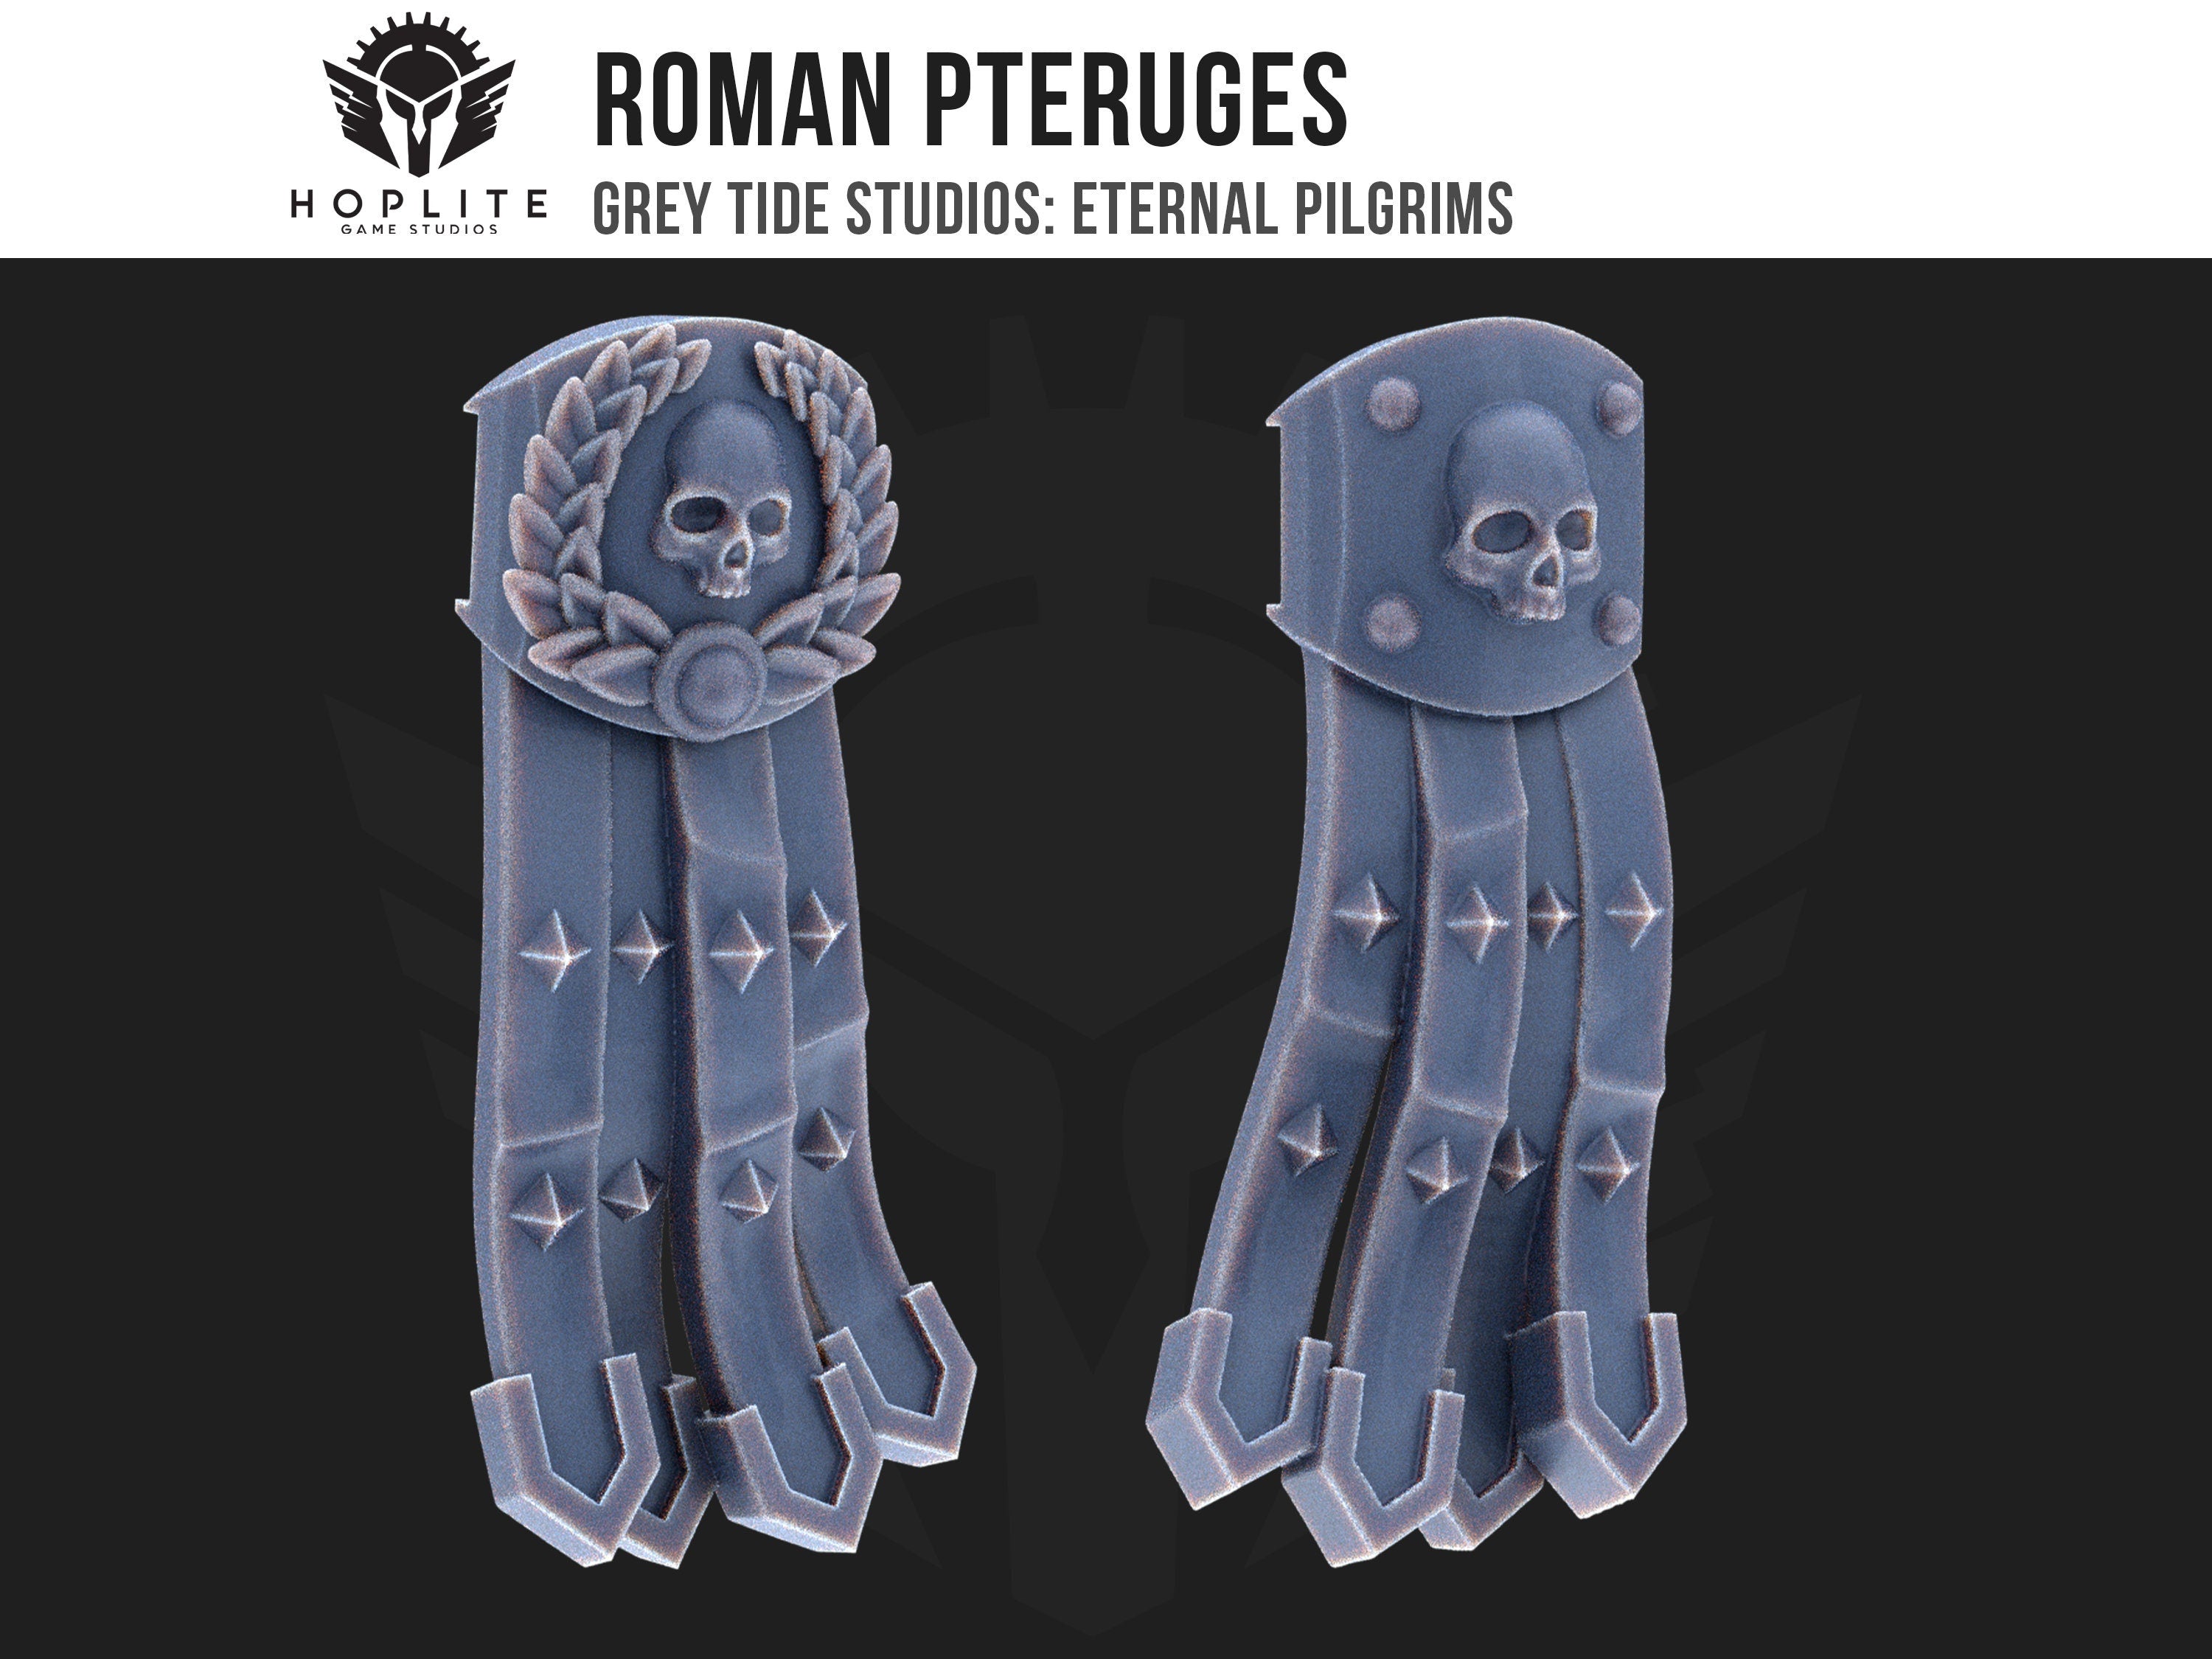 Pteruges romanos (x10) | Estudios de marea gris | Peregrinos eternos | Piezas y brocas de conversión